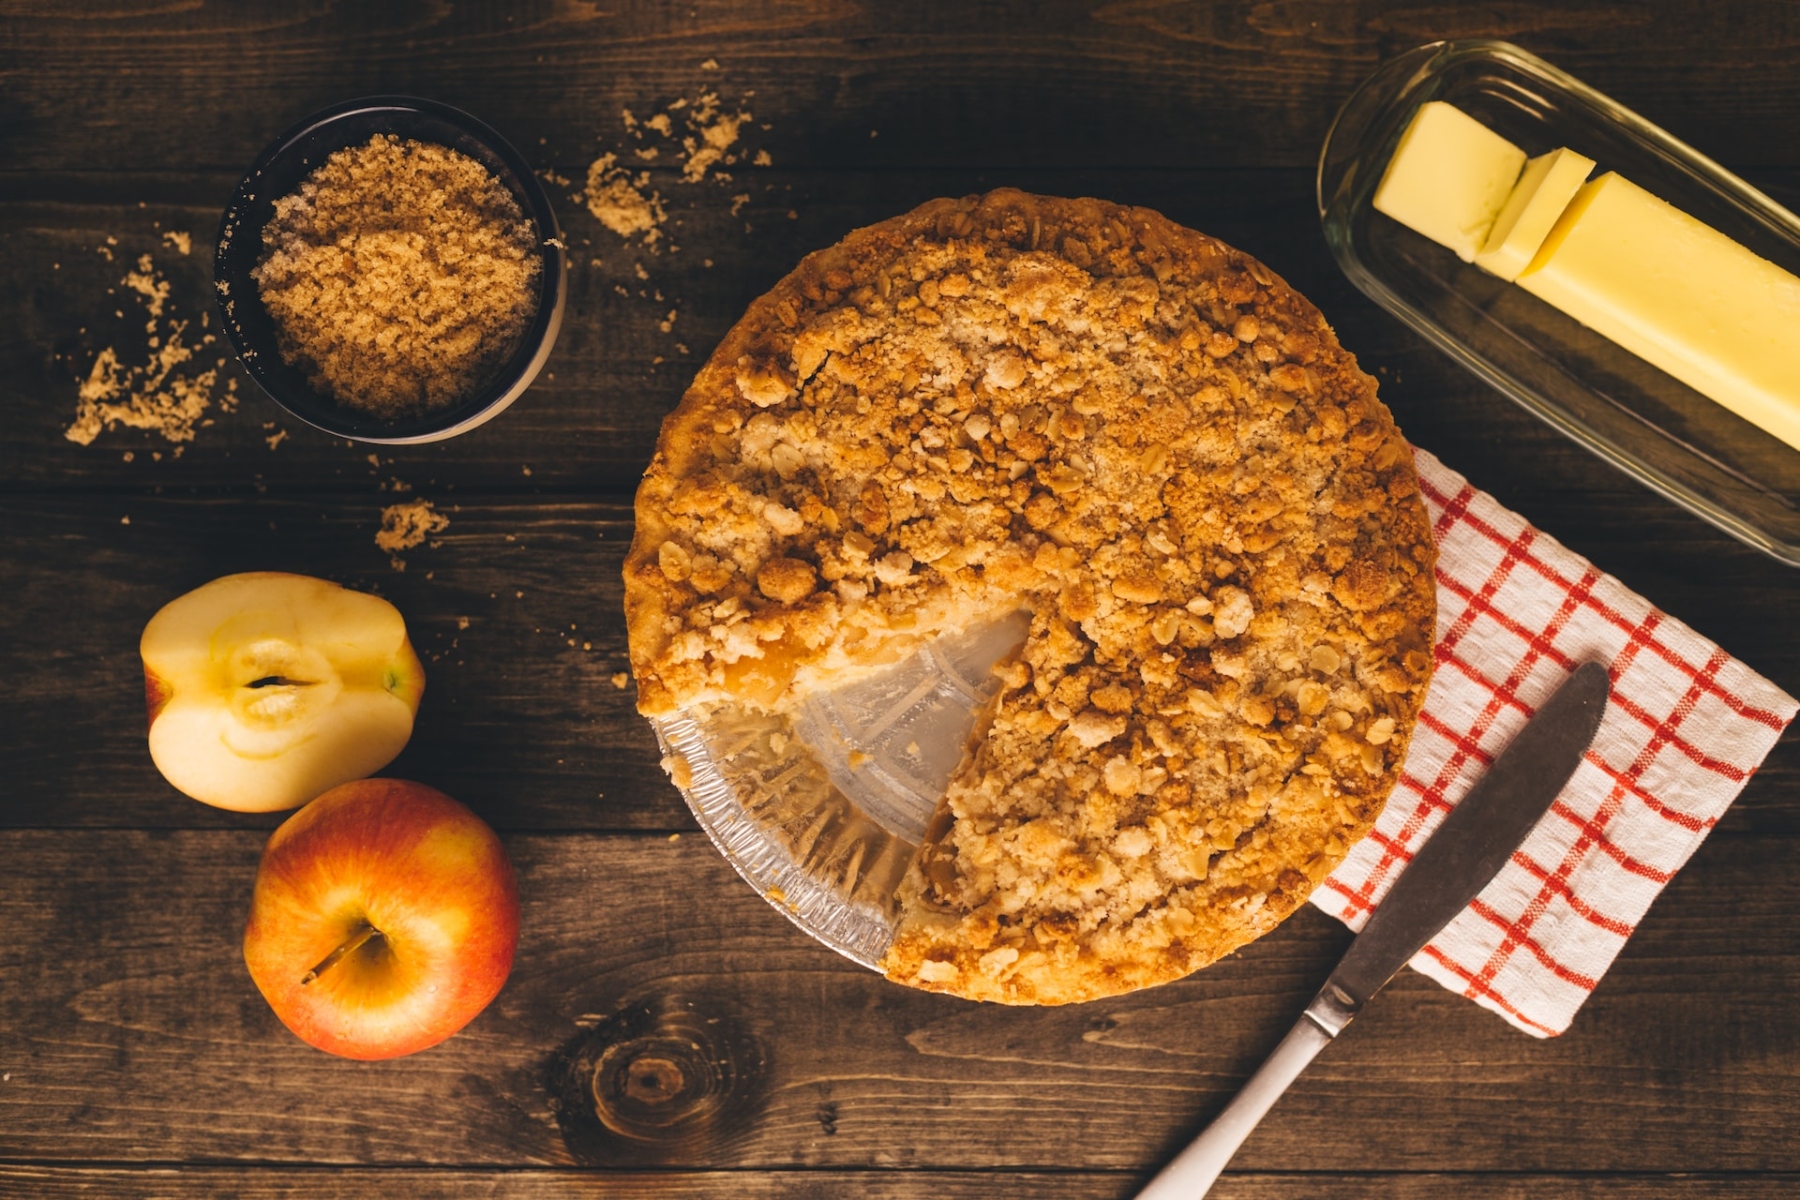 Μηλόπιτα: Φτιάξτε την πιο νόστιμη μηλόπιτα που έχετε γευτεί ποτέ!